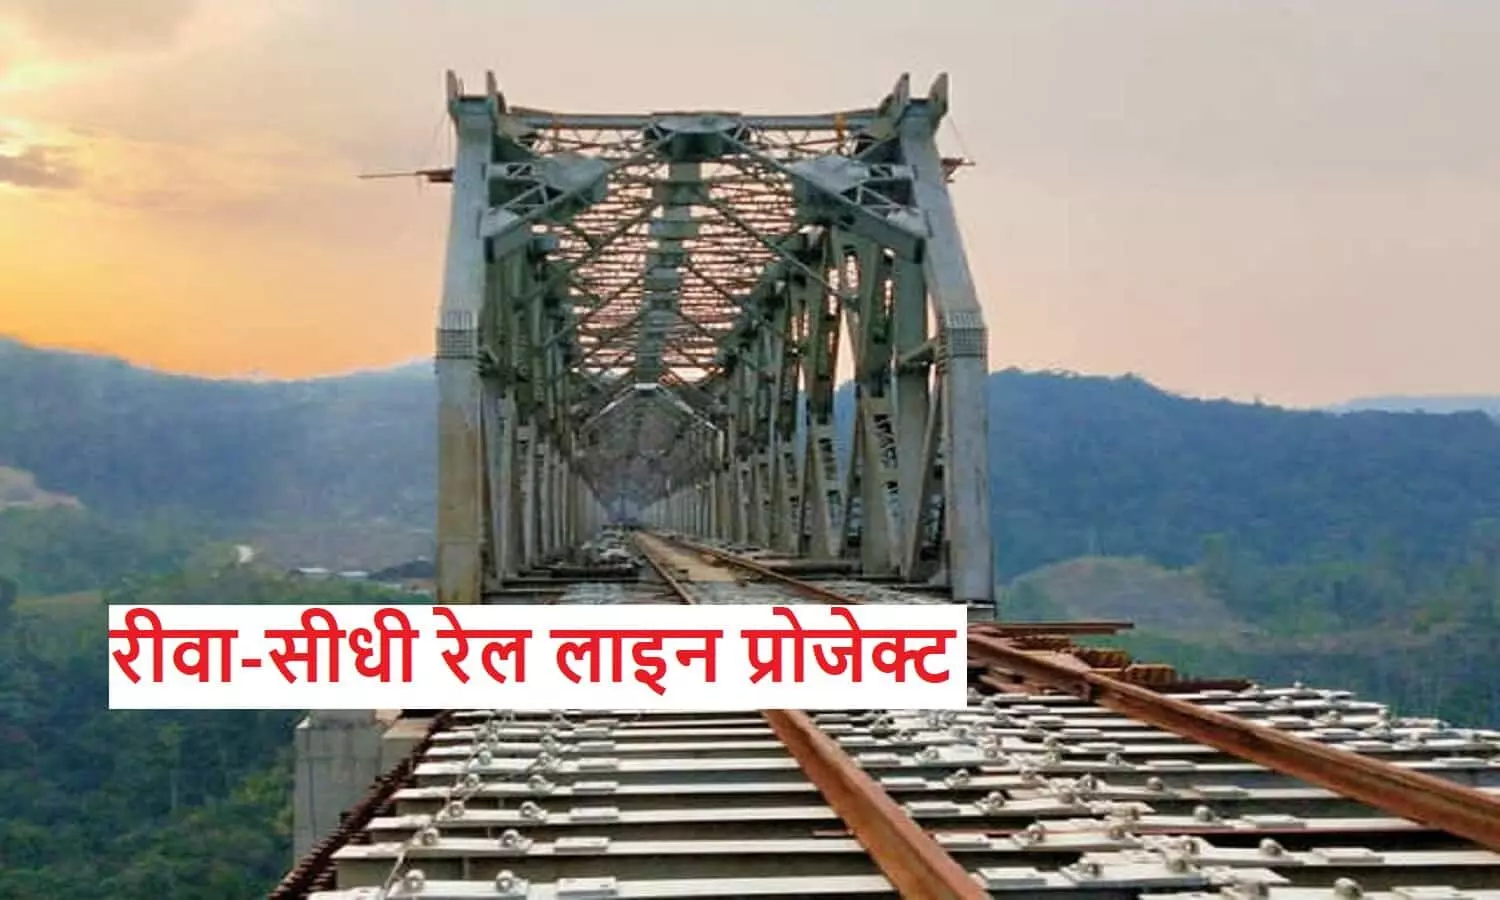 Rewa Sidhi Railway Line Project: रीवा से सीधी के बीच बनेंगे 15 रेलवे ओवर ब्रिज, 2 तैयार, शेष 13 ROB के लिए टेंडर प्रक्रिया की तैयारी